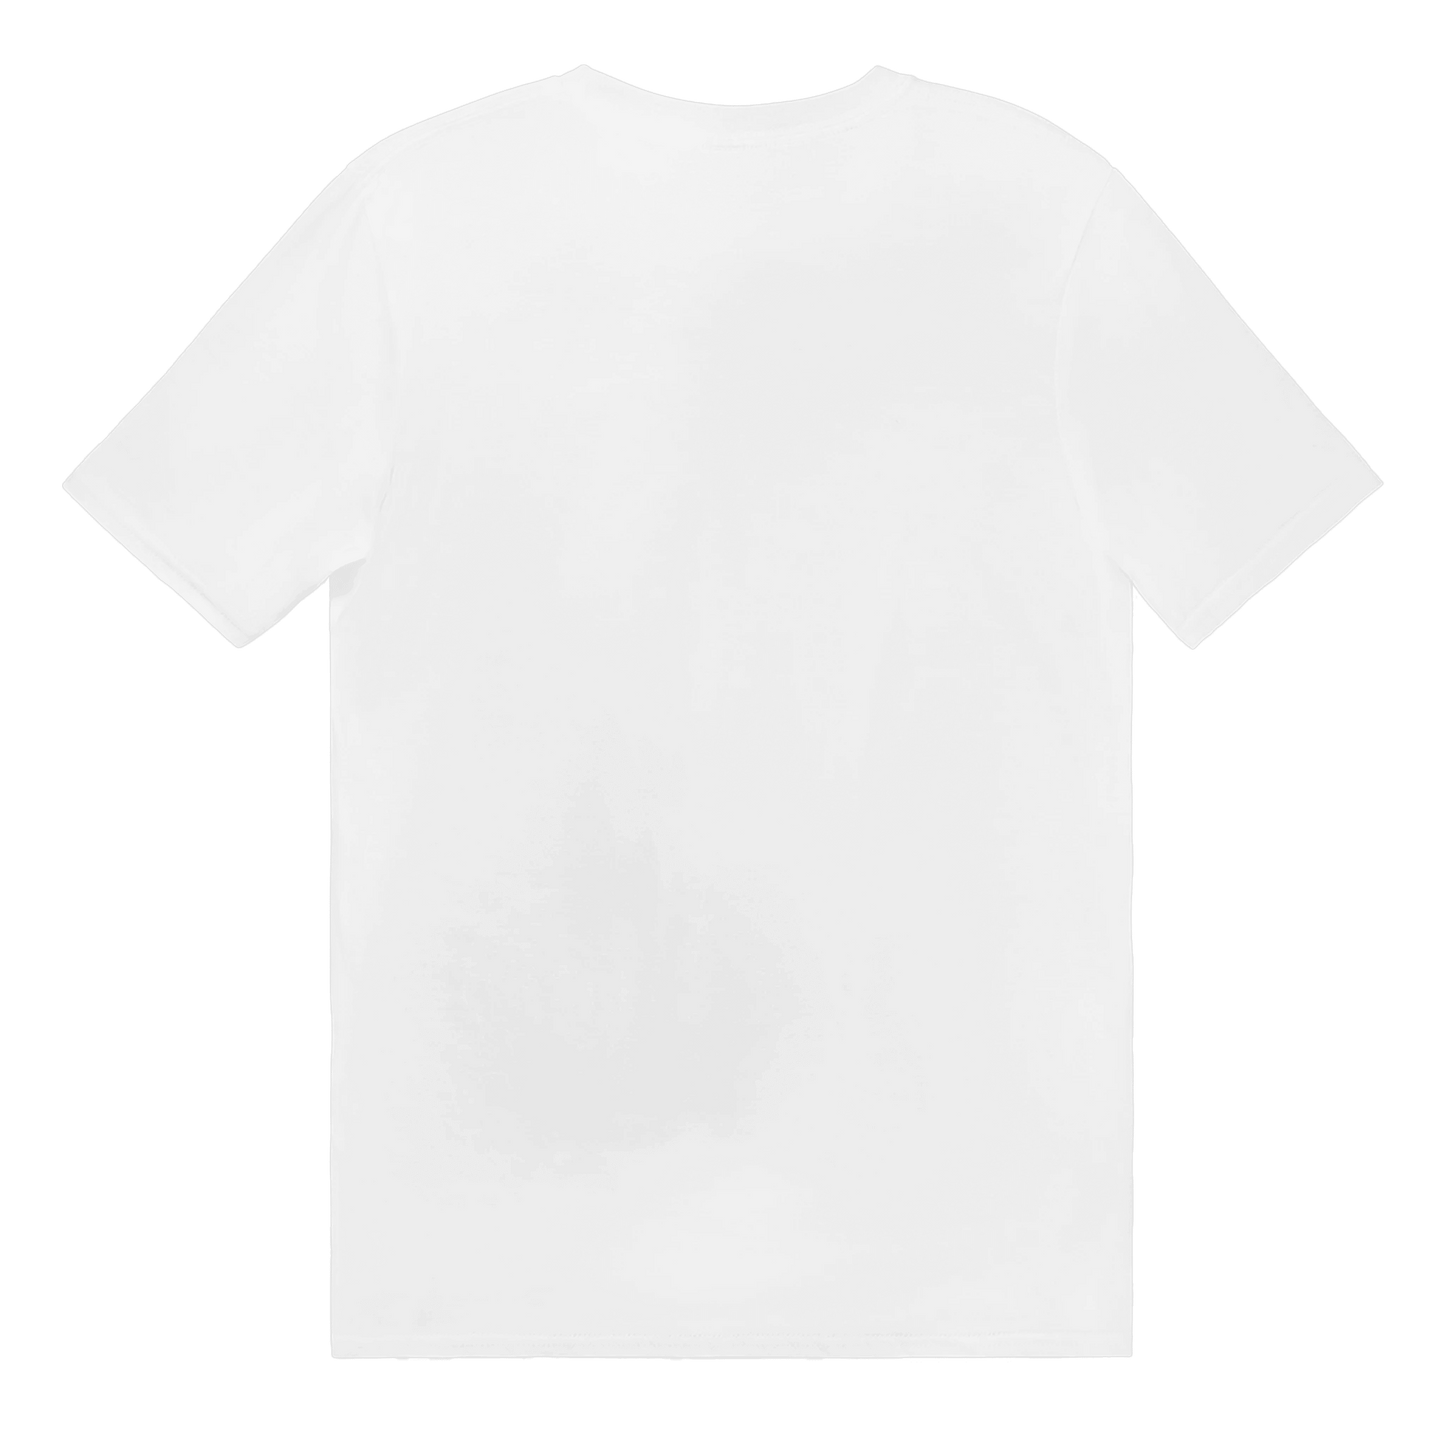 Långhylsa Fan Club Norrland Edition - T-shirt 